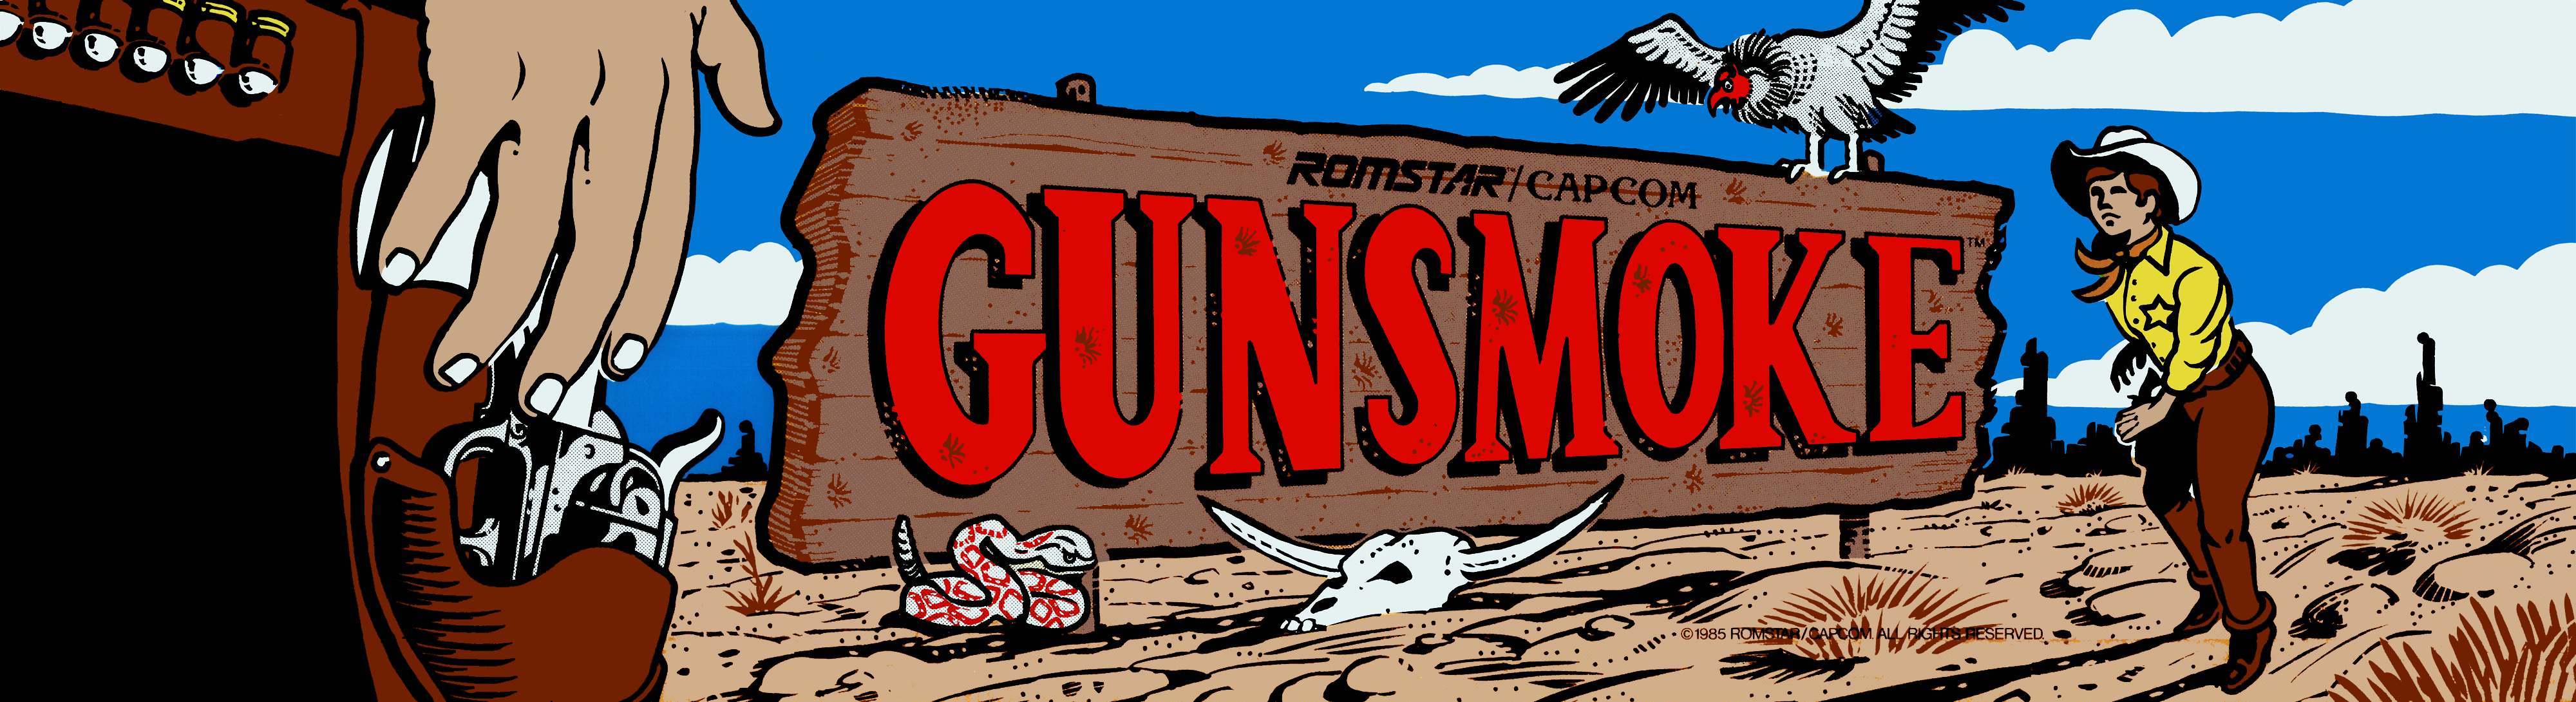 Video Game Gunsmoke HD Wallpaper | Background Image